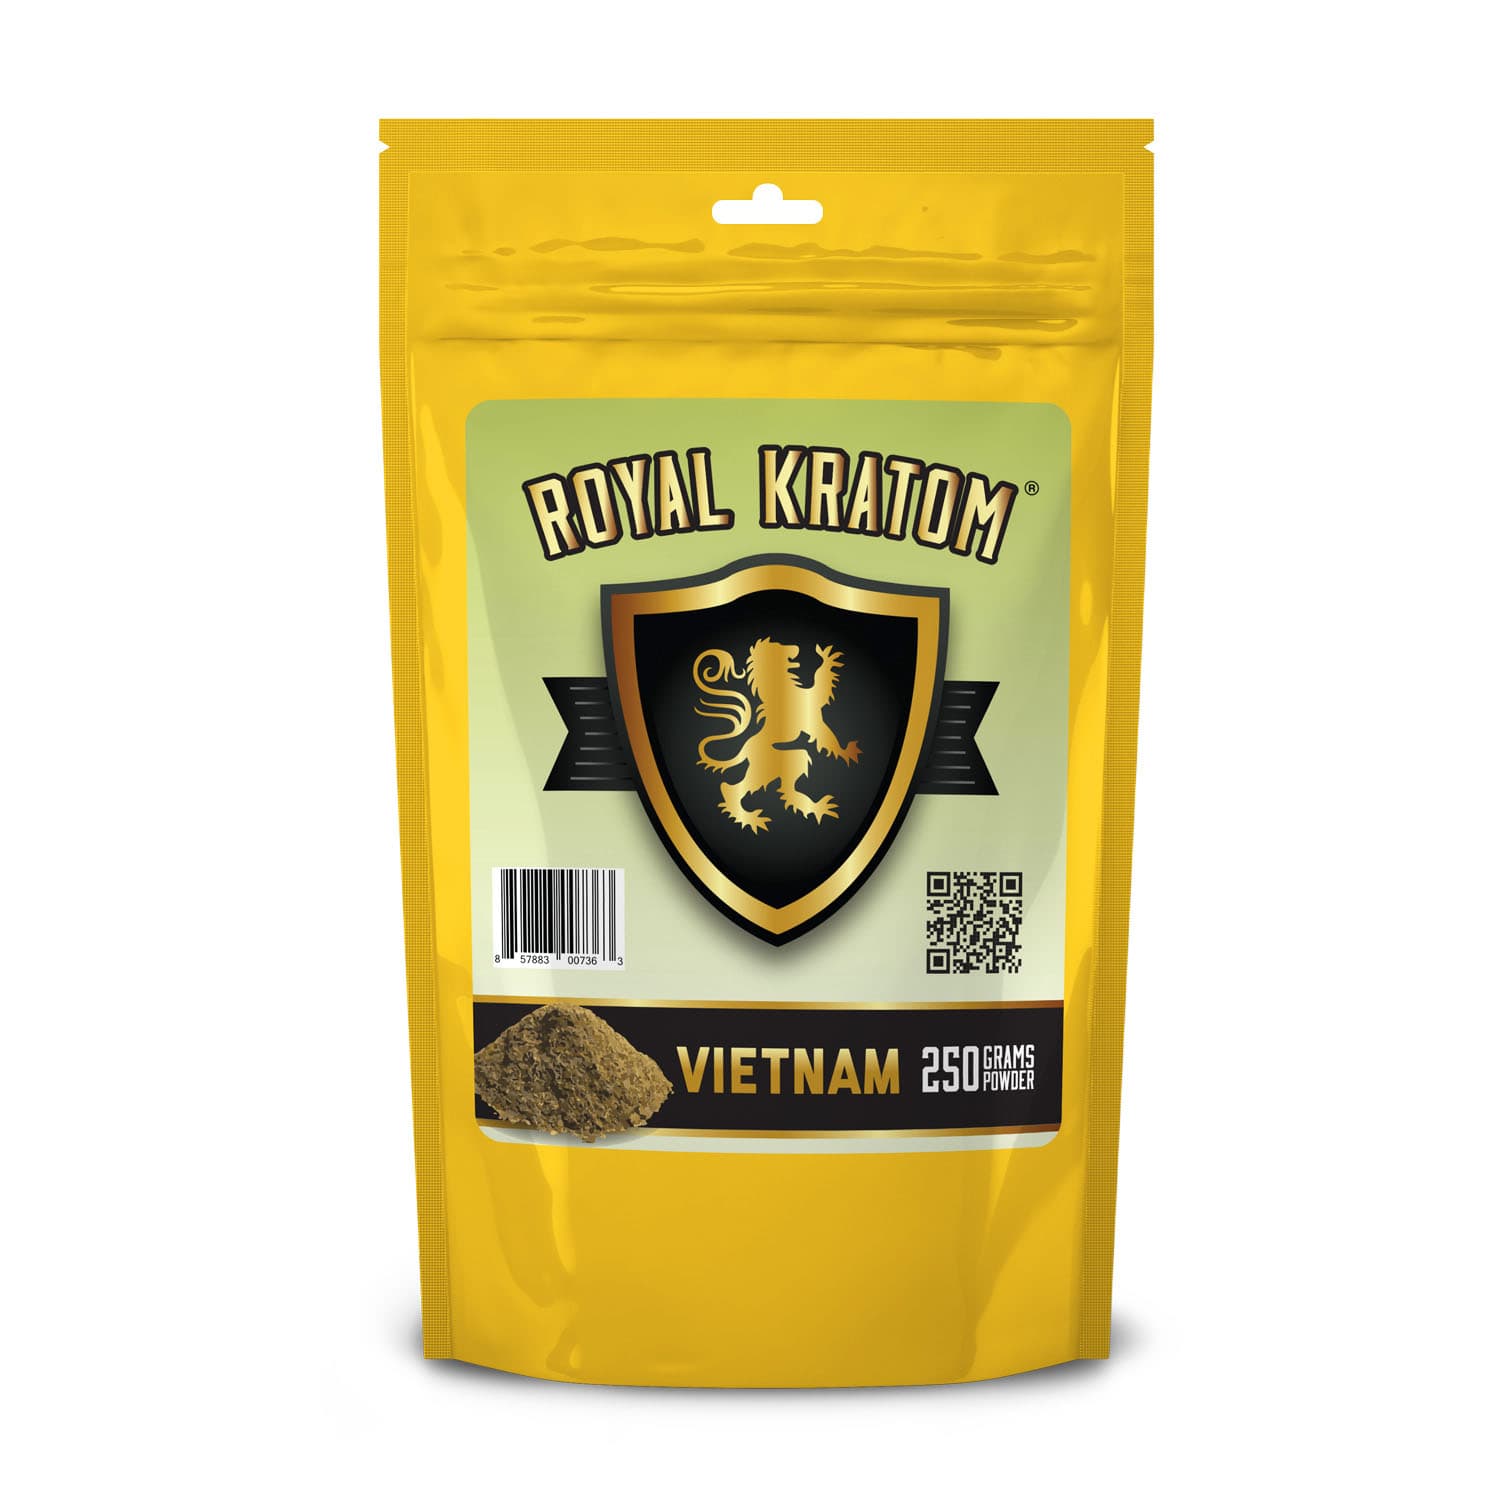 Vietnam Kratom Powder 250 Grams front of package